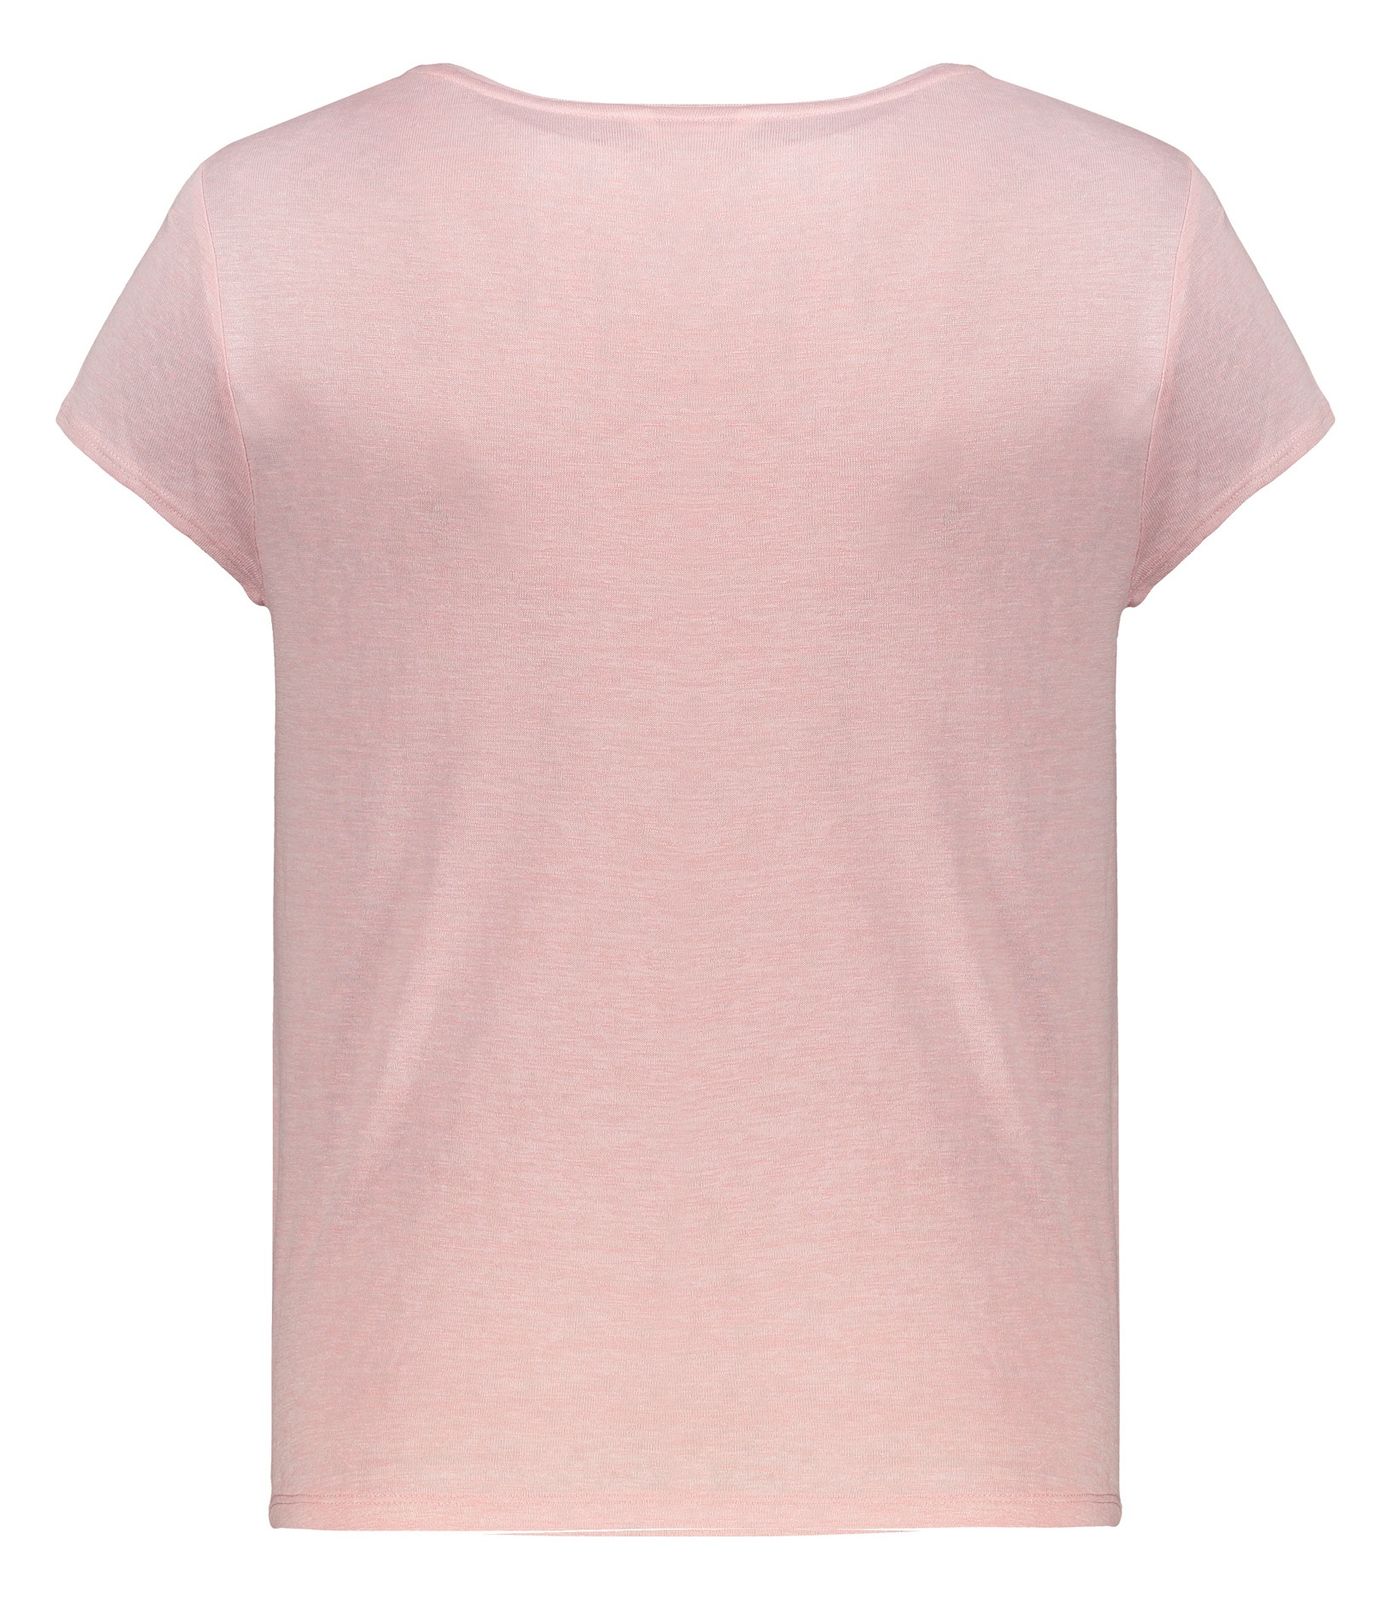 تی شرت زنانه اسپرینگ فیلد مدل 8863709-PINKS